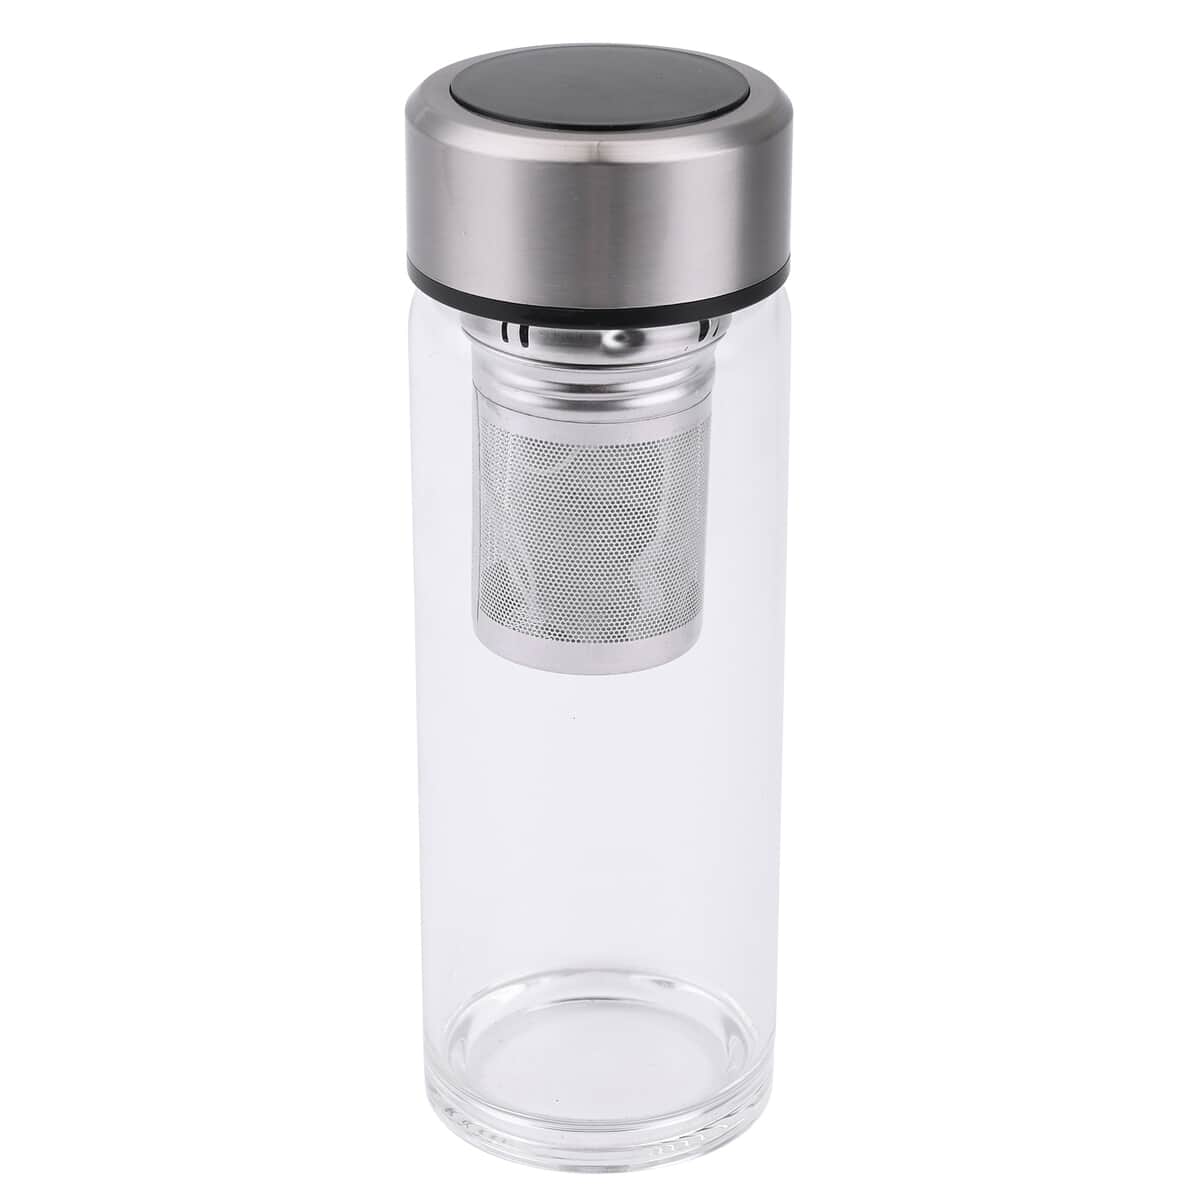 Elite Shungite Filter Infuser and Temperature Sensor Smart Water Bottle (LED Display, Long Filter) - Silver image number 0